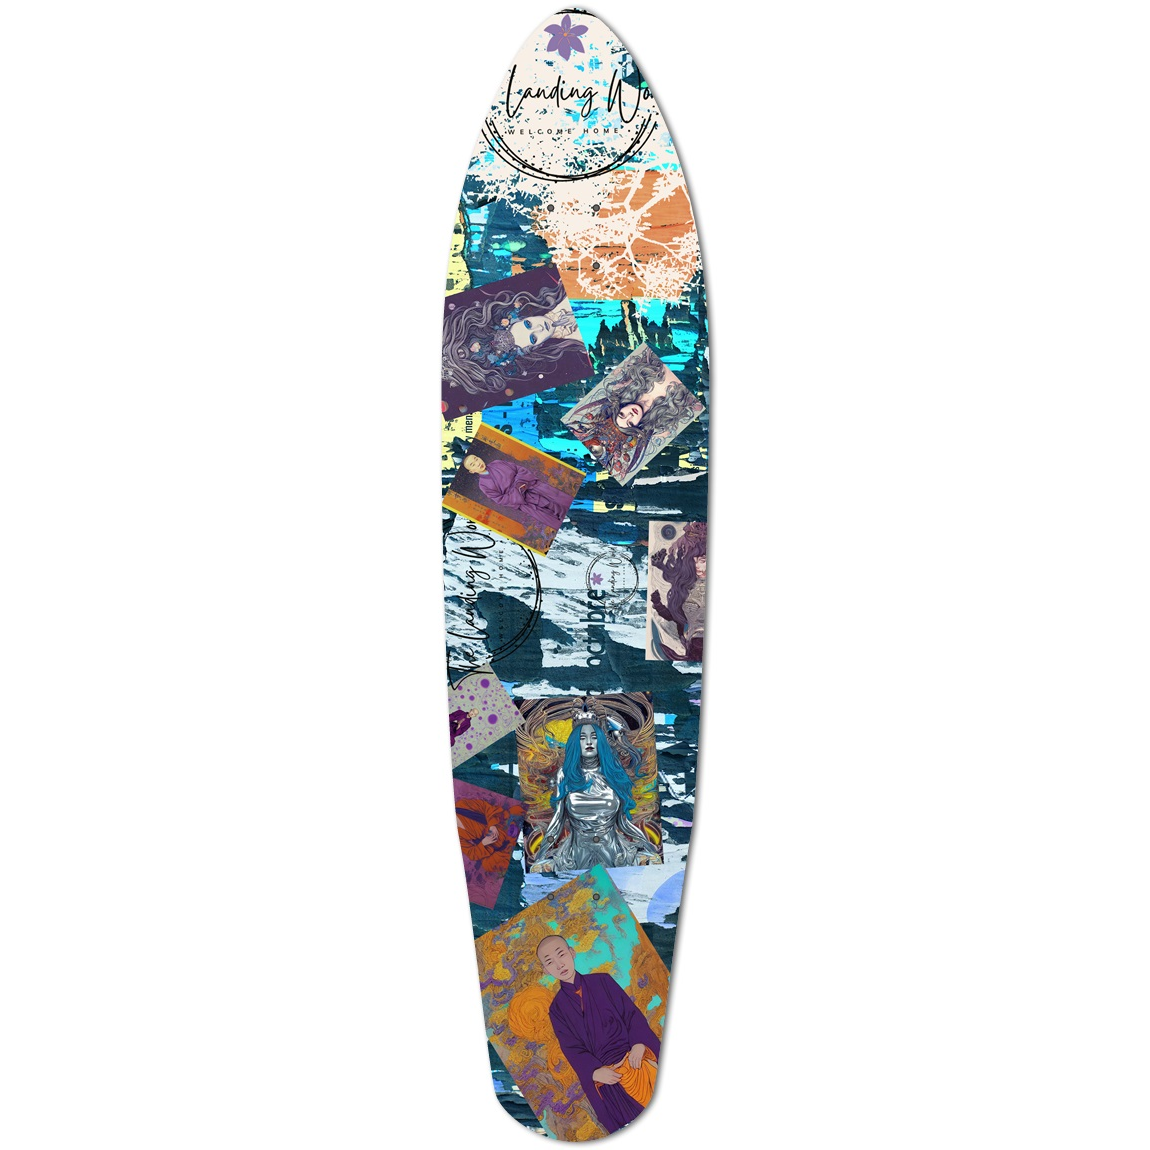 Queen & Monk Skateboard 9.125 x 40.5 The Landing World